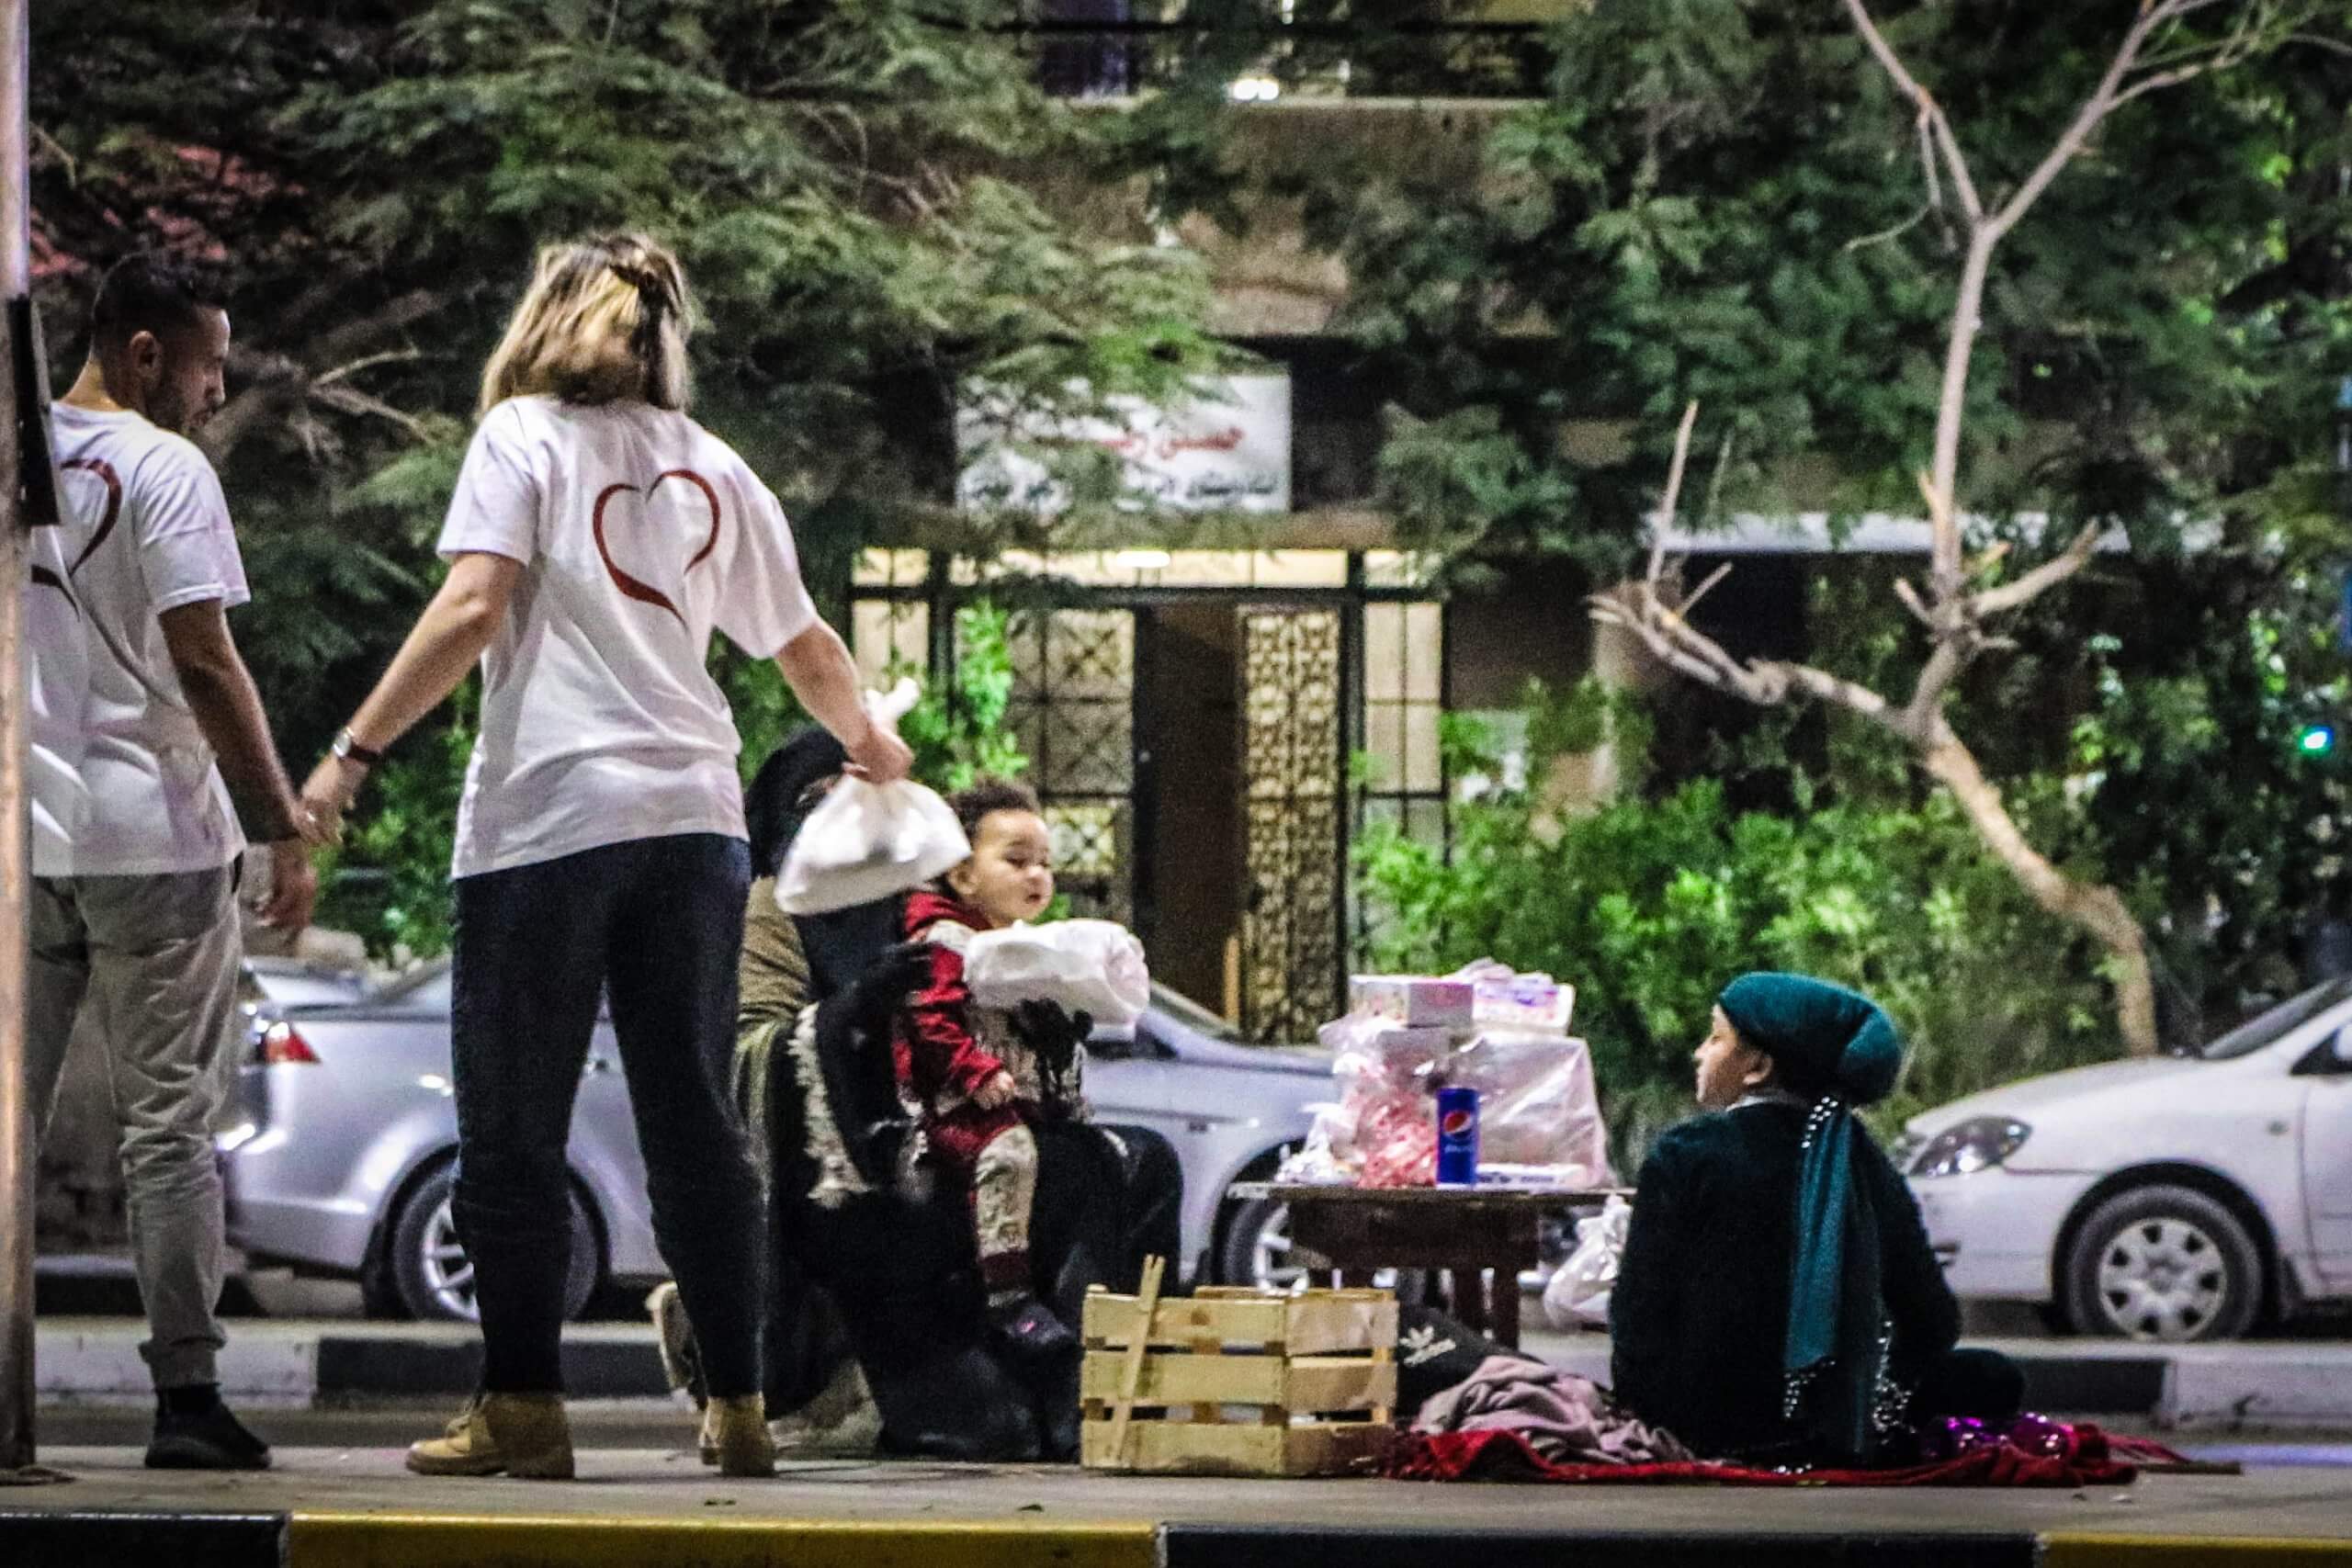 المتطوعون يشرعون بمُساعدة المُشردين في الاسكندرية عبر توزيع الوجبات مساءً